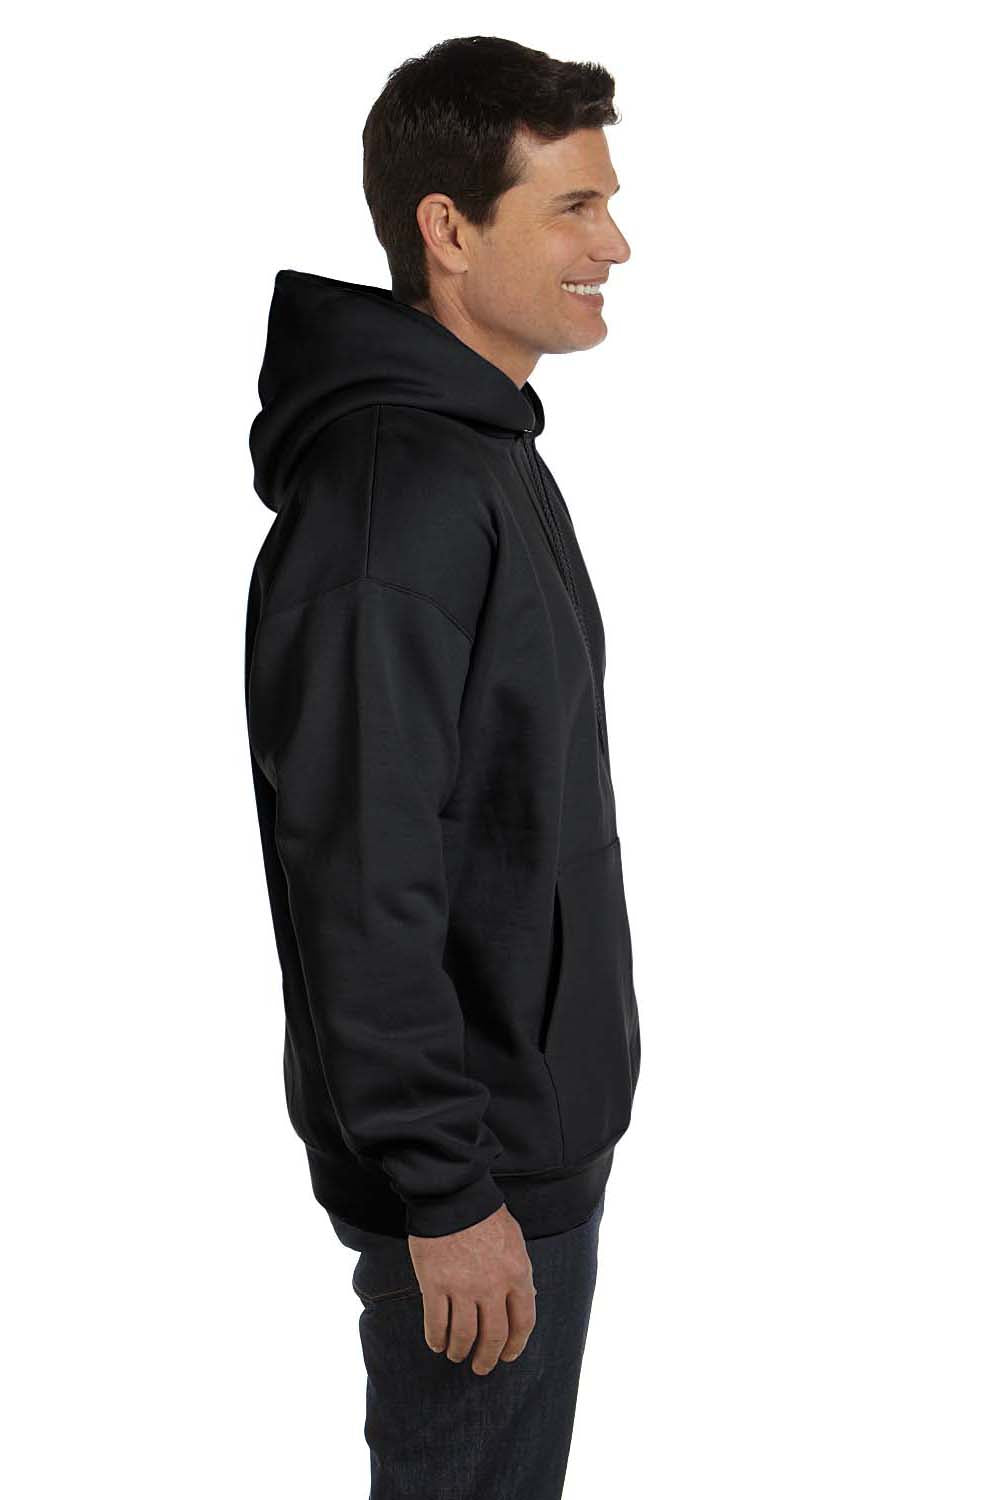 Hanes F170 Mens Ultimate Cotton PrintPro XP Hooded Sweatshirt Hoodie Black Side